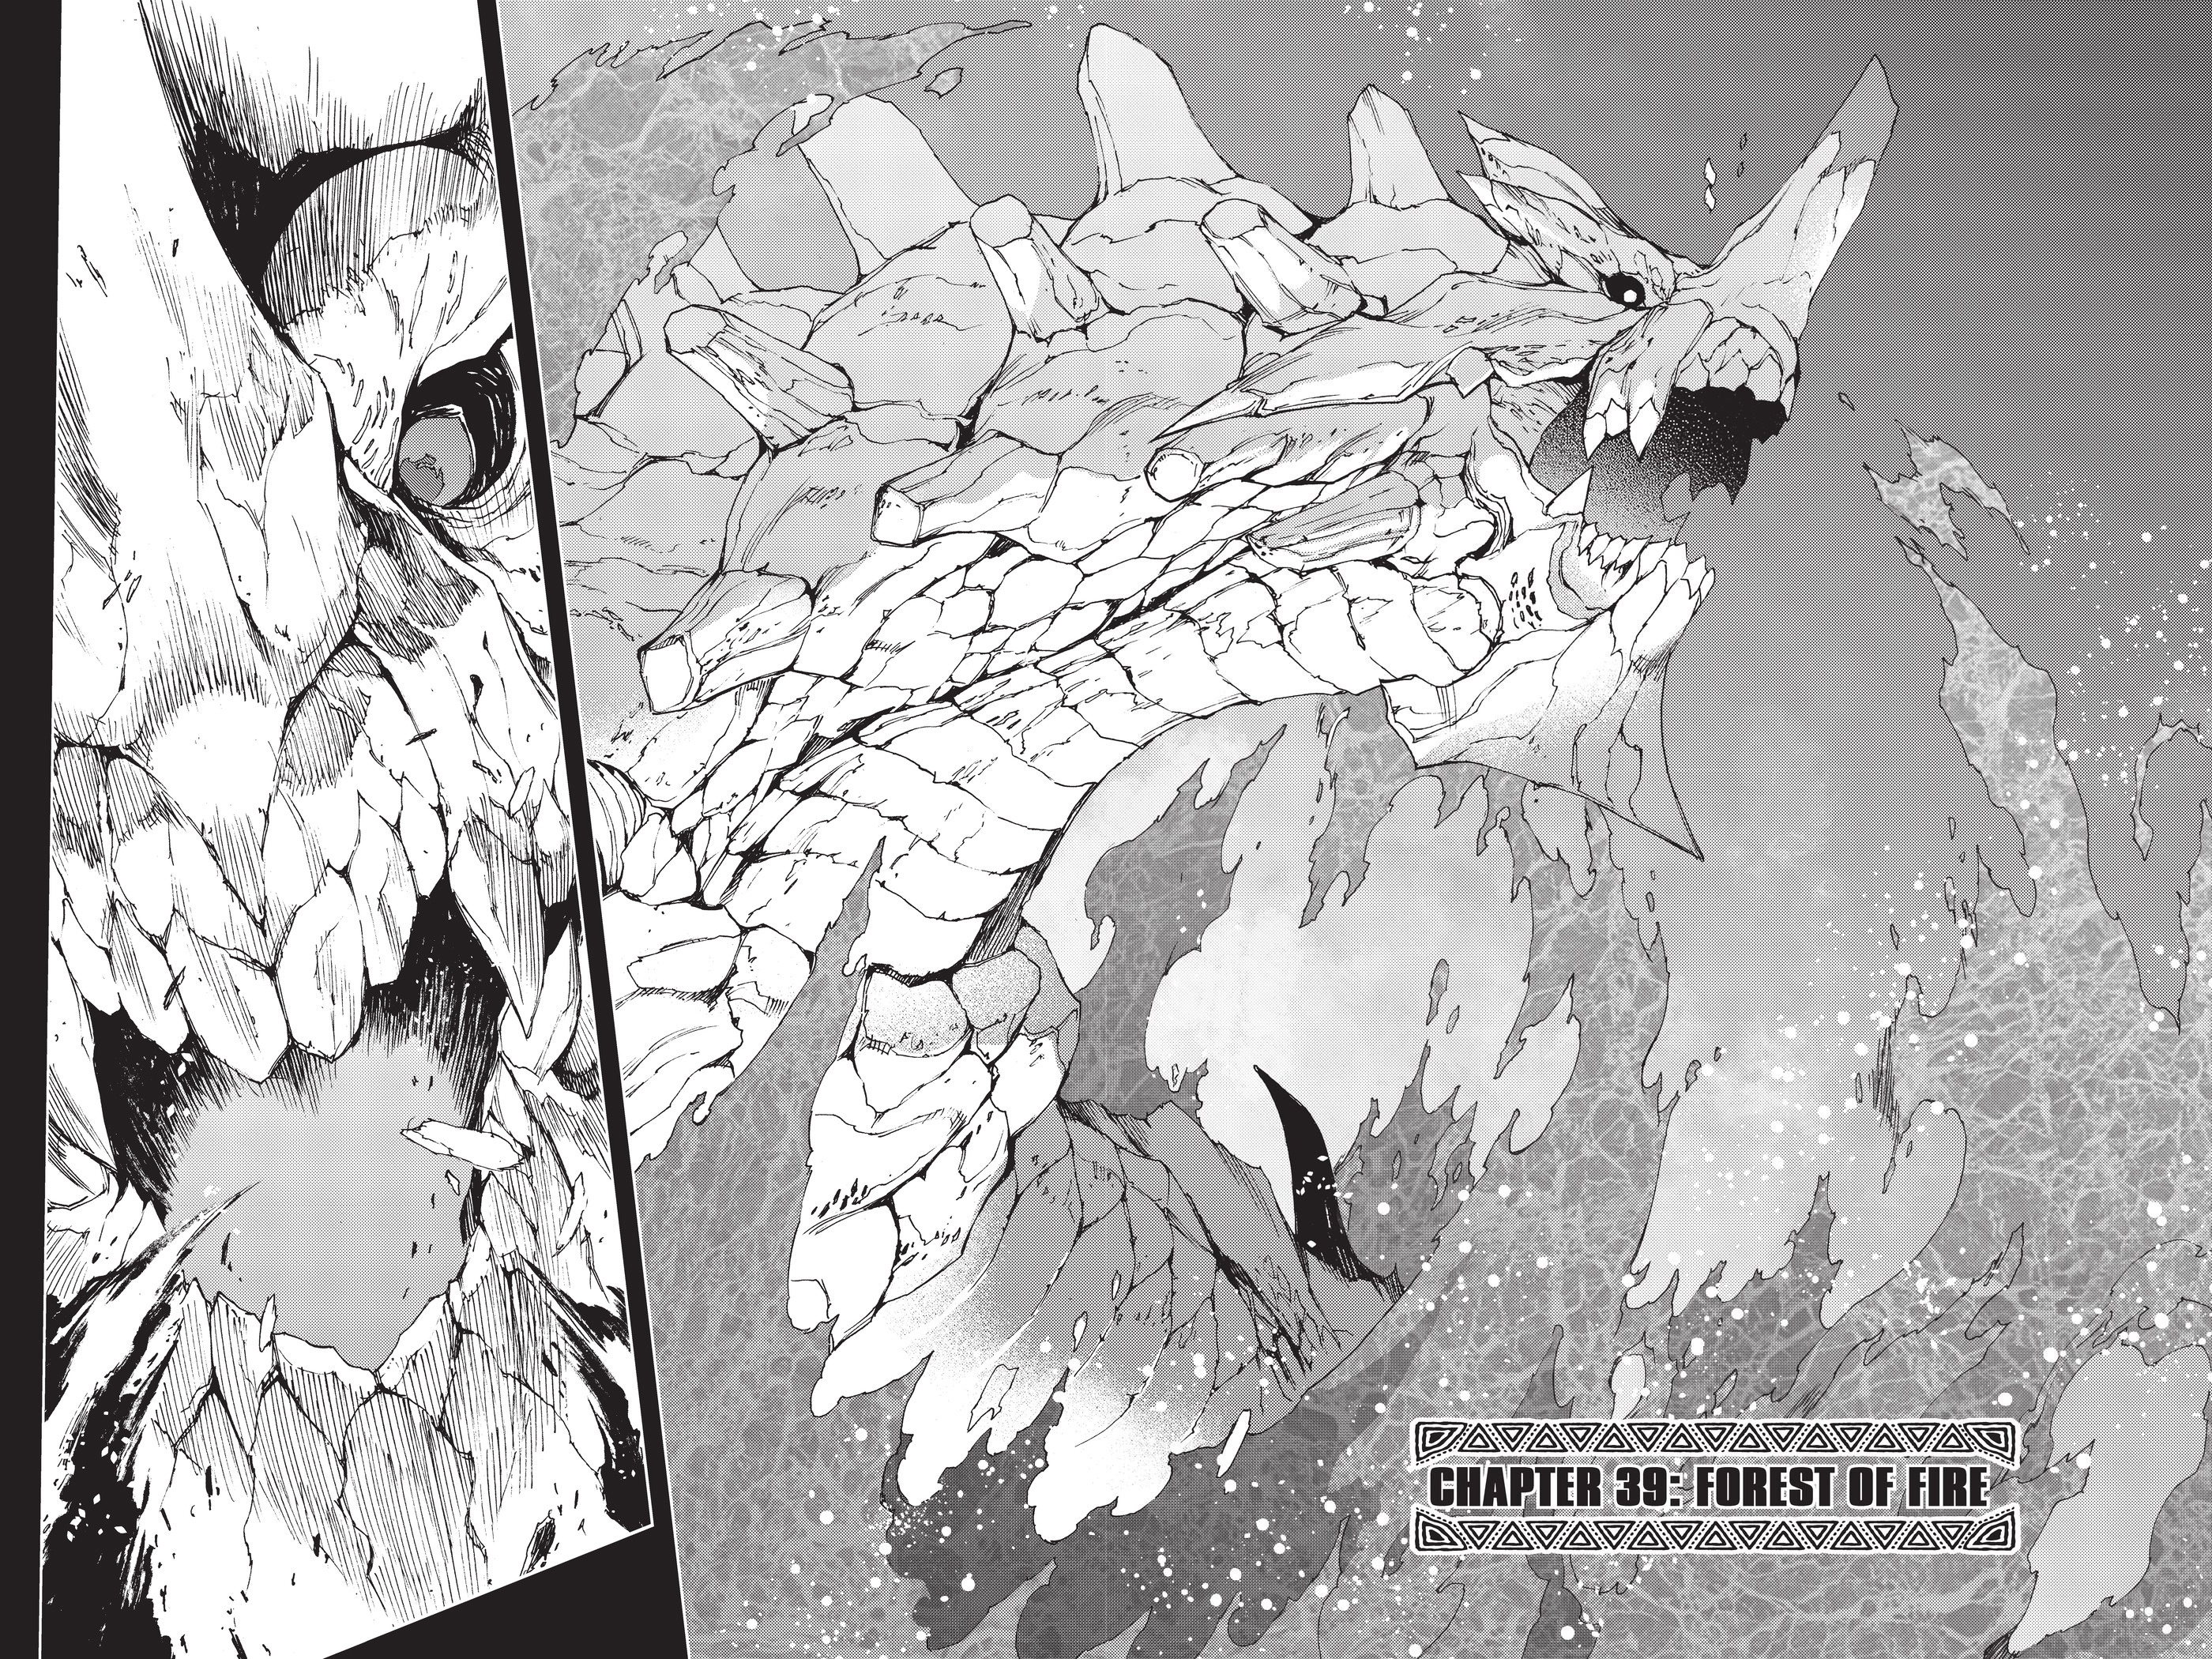 Monster Hunter - Senkou No Kariudo - Page 2